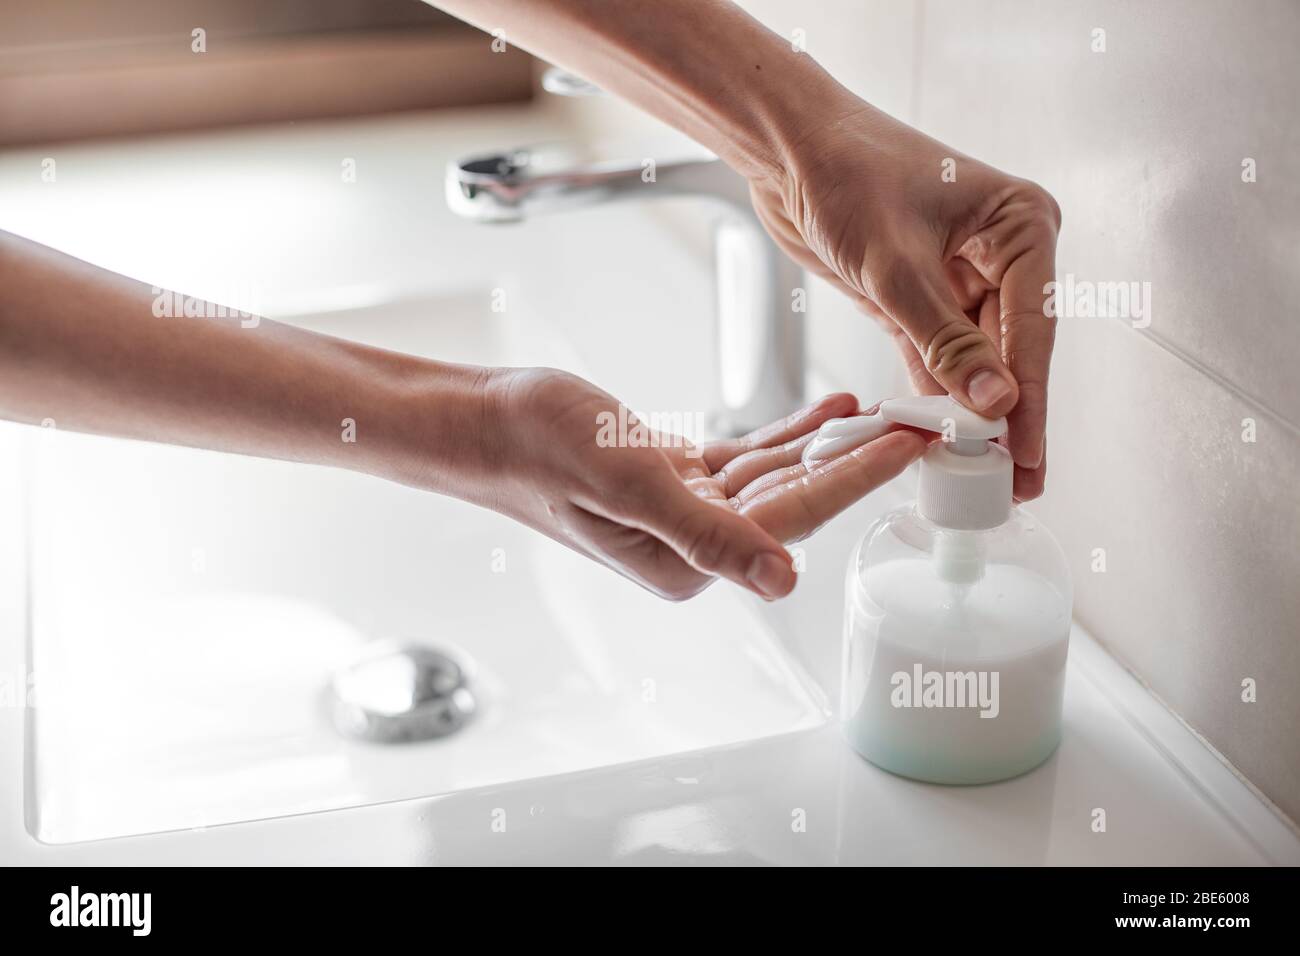 Laver les mains avec du savon pour prévenir l'infection du coronavirus Banque D'Images